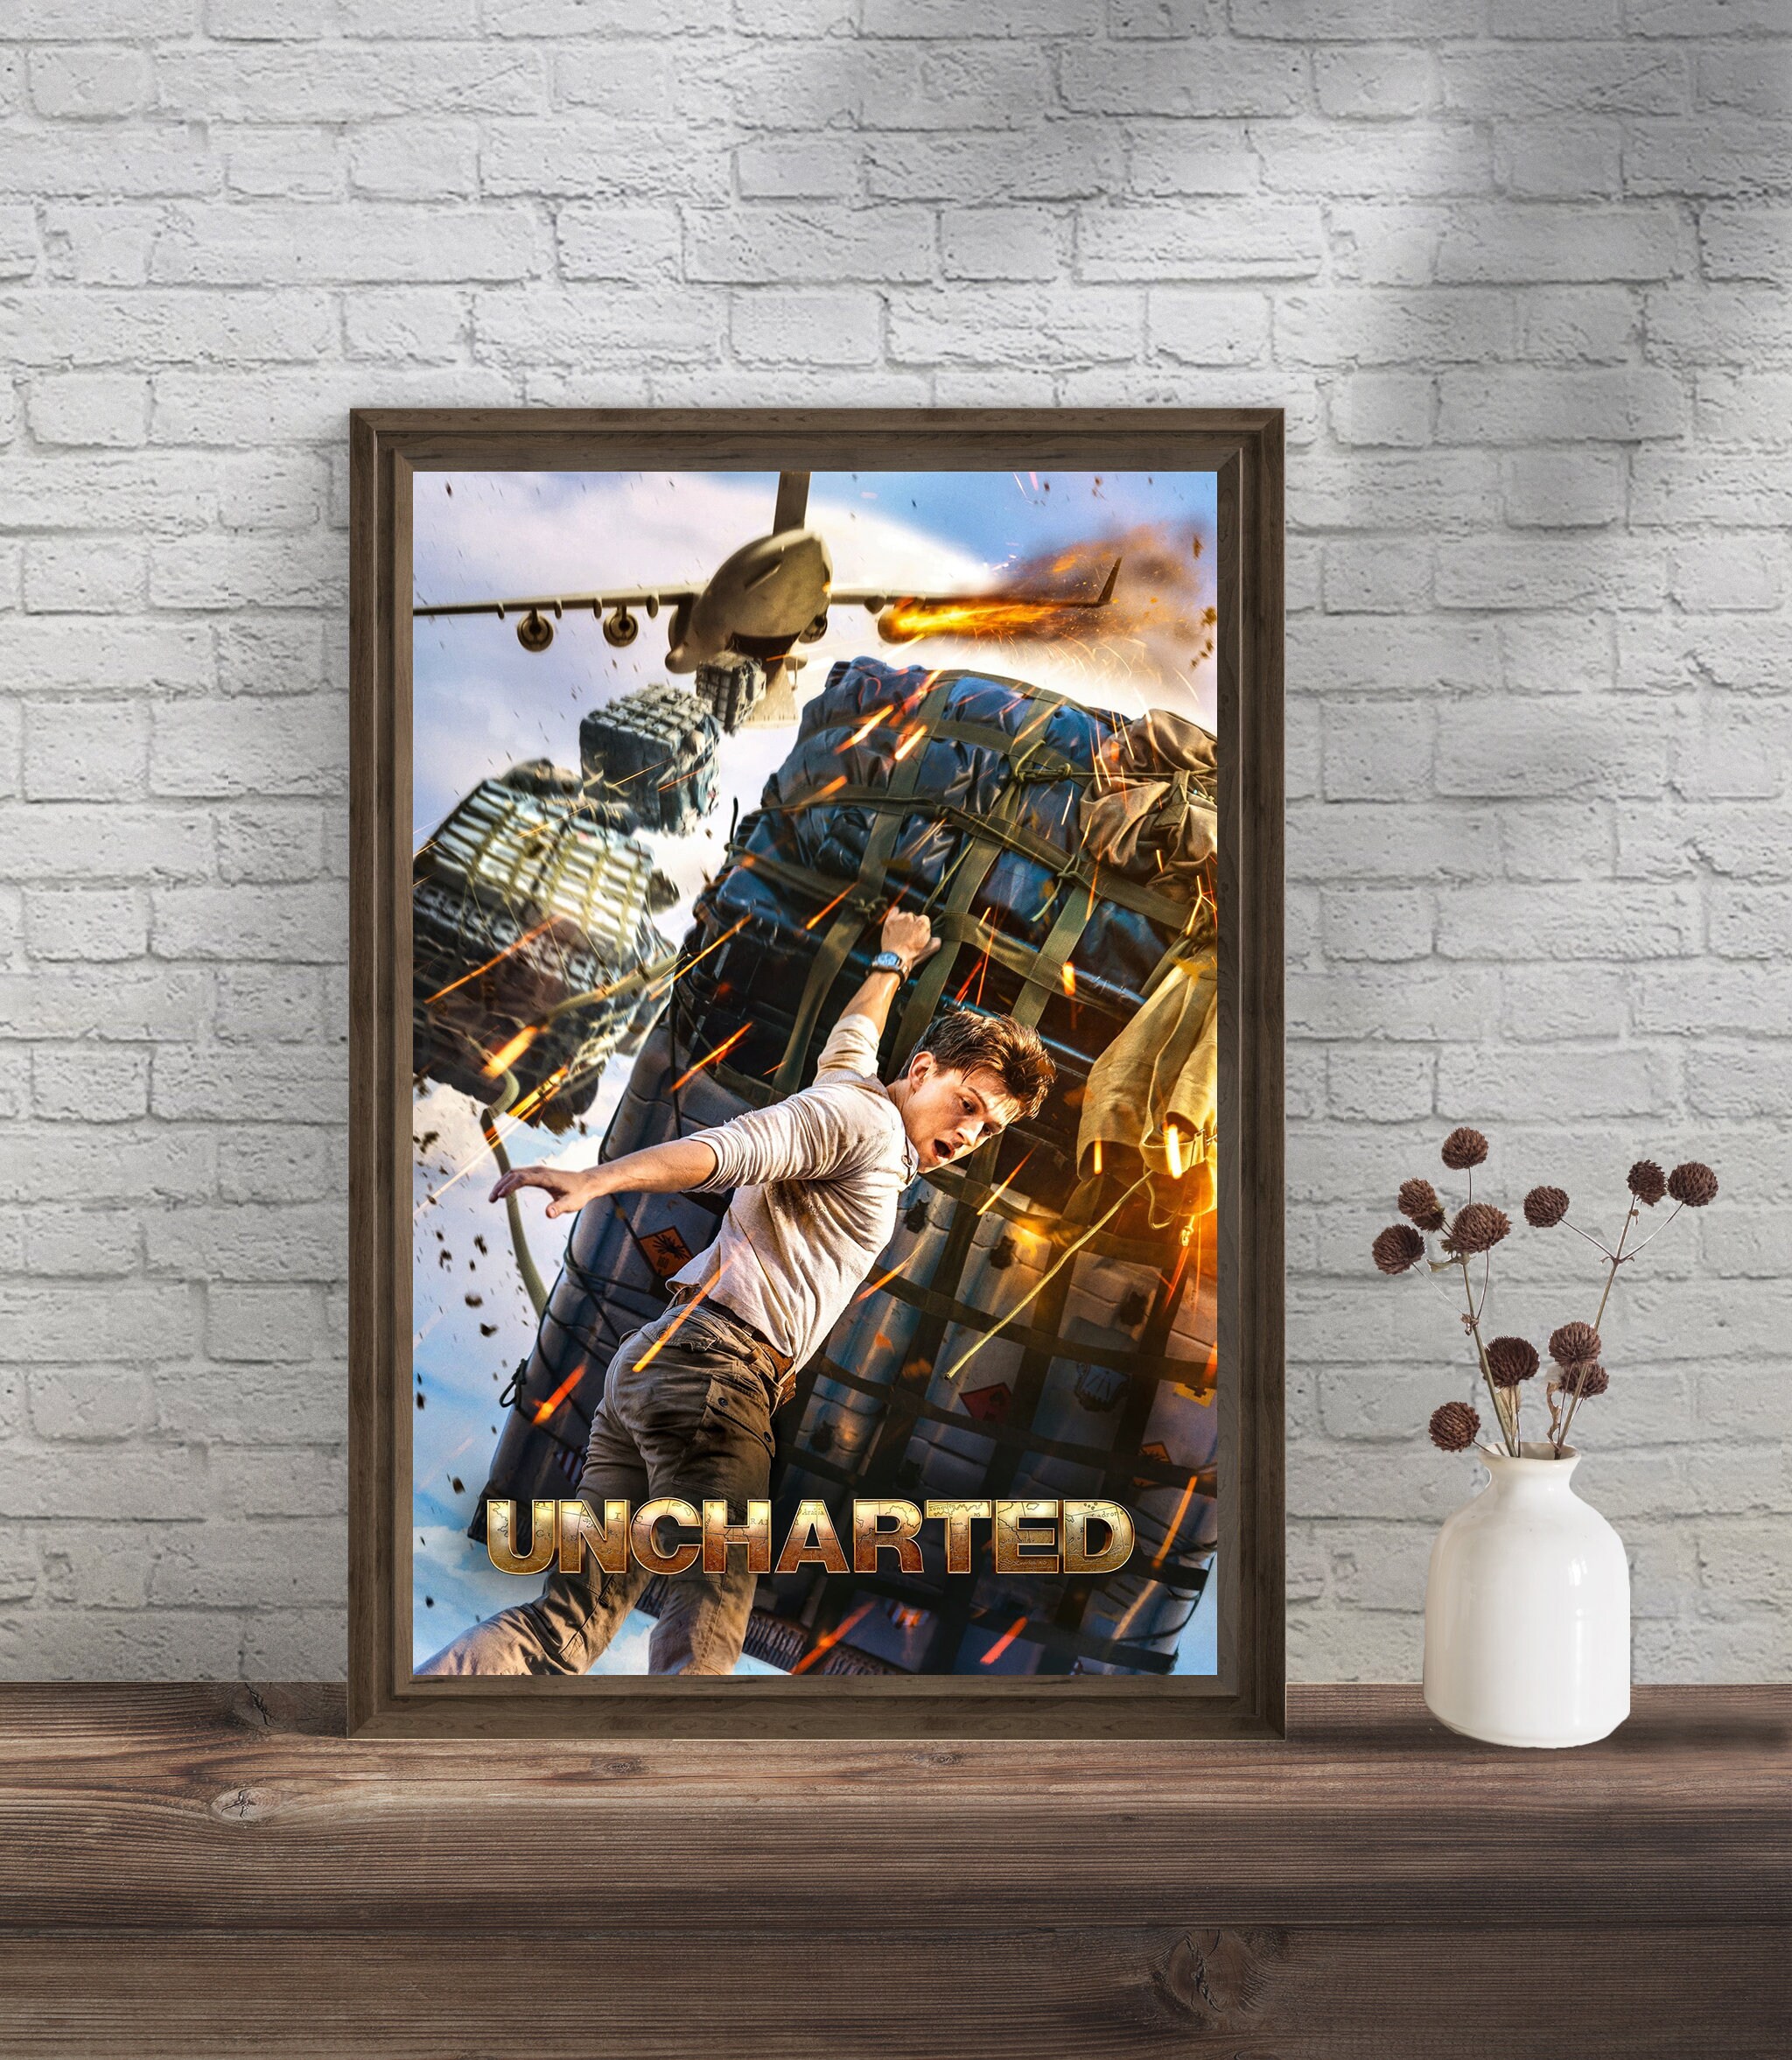 Uncharted Ruben Fleischer Minimalist Movie Poster 